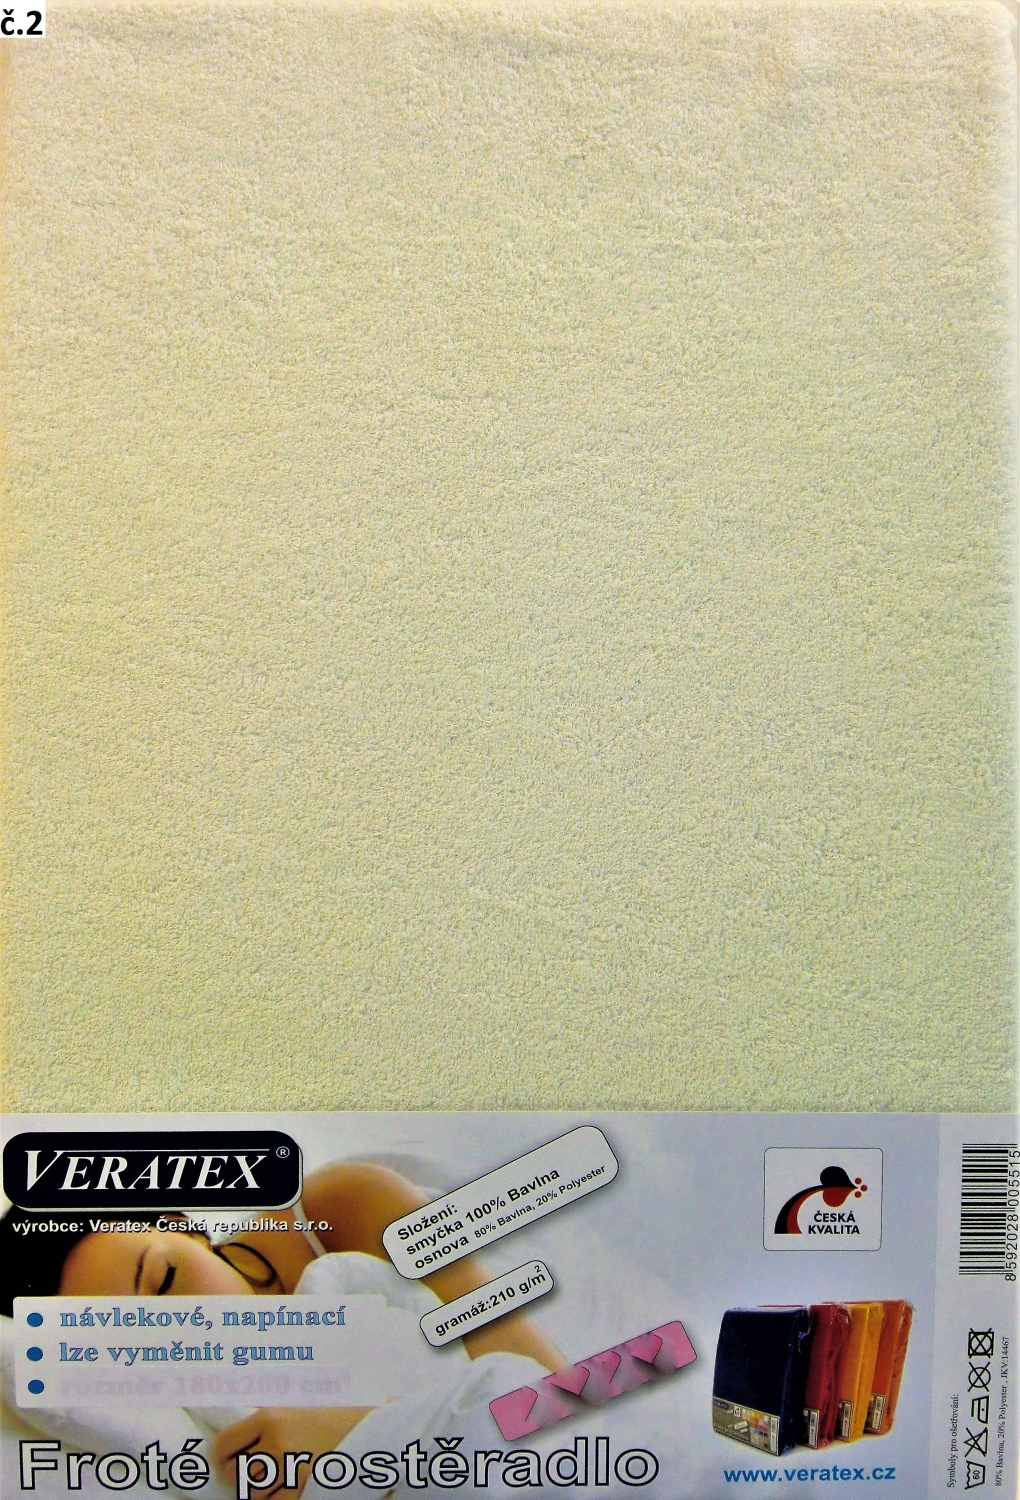 Veratex Froté prostěradlo 200x220/16 cm (č. 2-smetanová) 200 x 220 cm